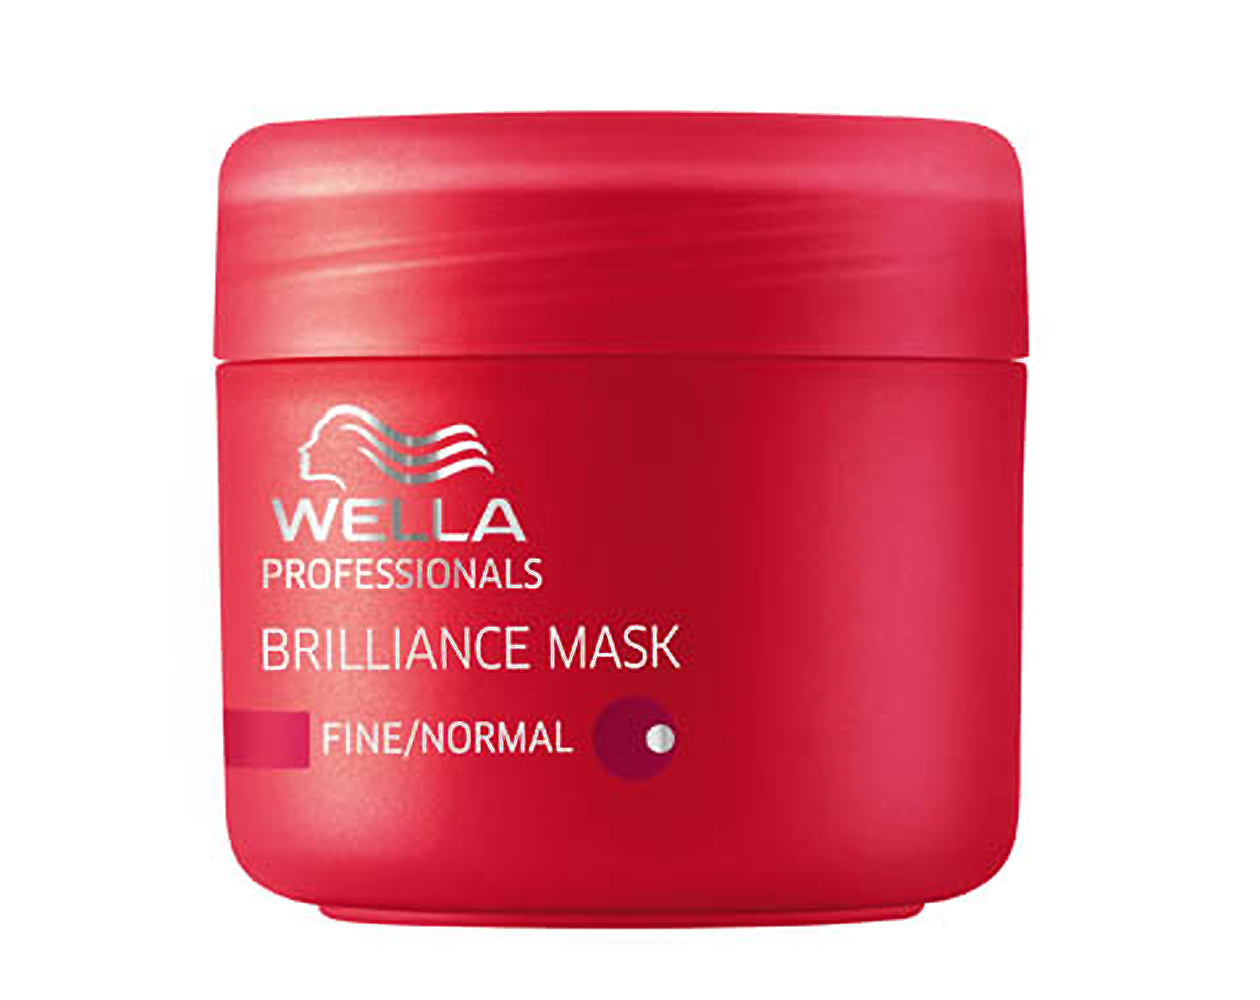 Велла маска для волос. Wella Brilliance маска 150 ml. Велла брилианс для окрашенных волос маска. Wella Invigo Brilliance Fine Mask. Wella маска красная.